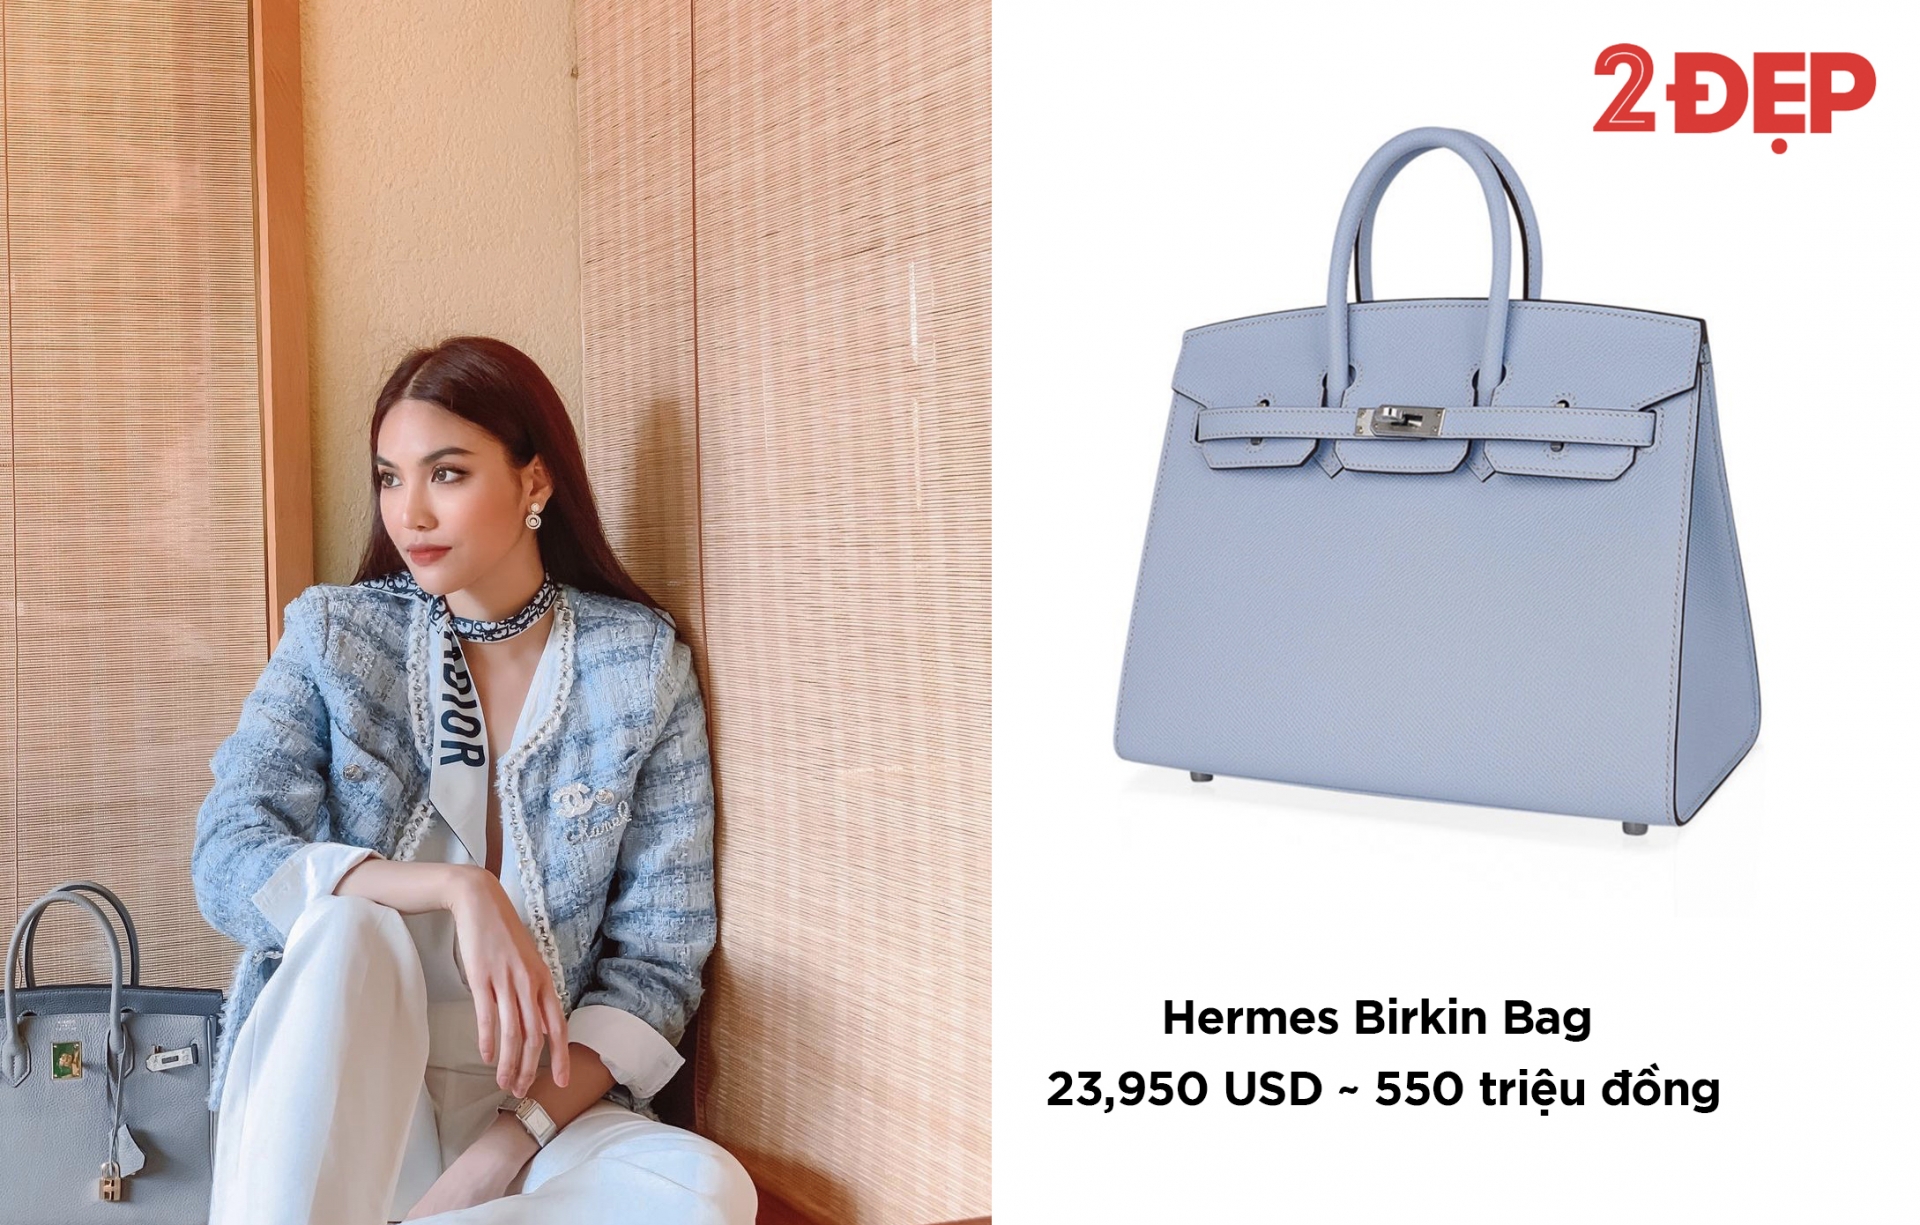 Mẫu Birkin màu xanh da trời phiên bản giới hạn với giá hơn nửa tỷ đồng được Lan Khuê phối đồng điệu với áo tweet và khăn choàng cổ Dior.